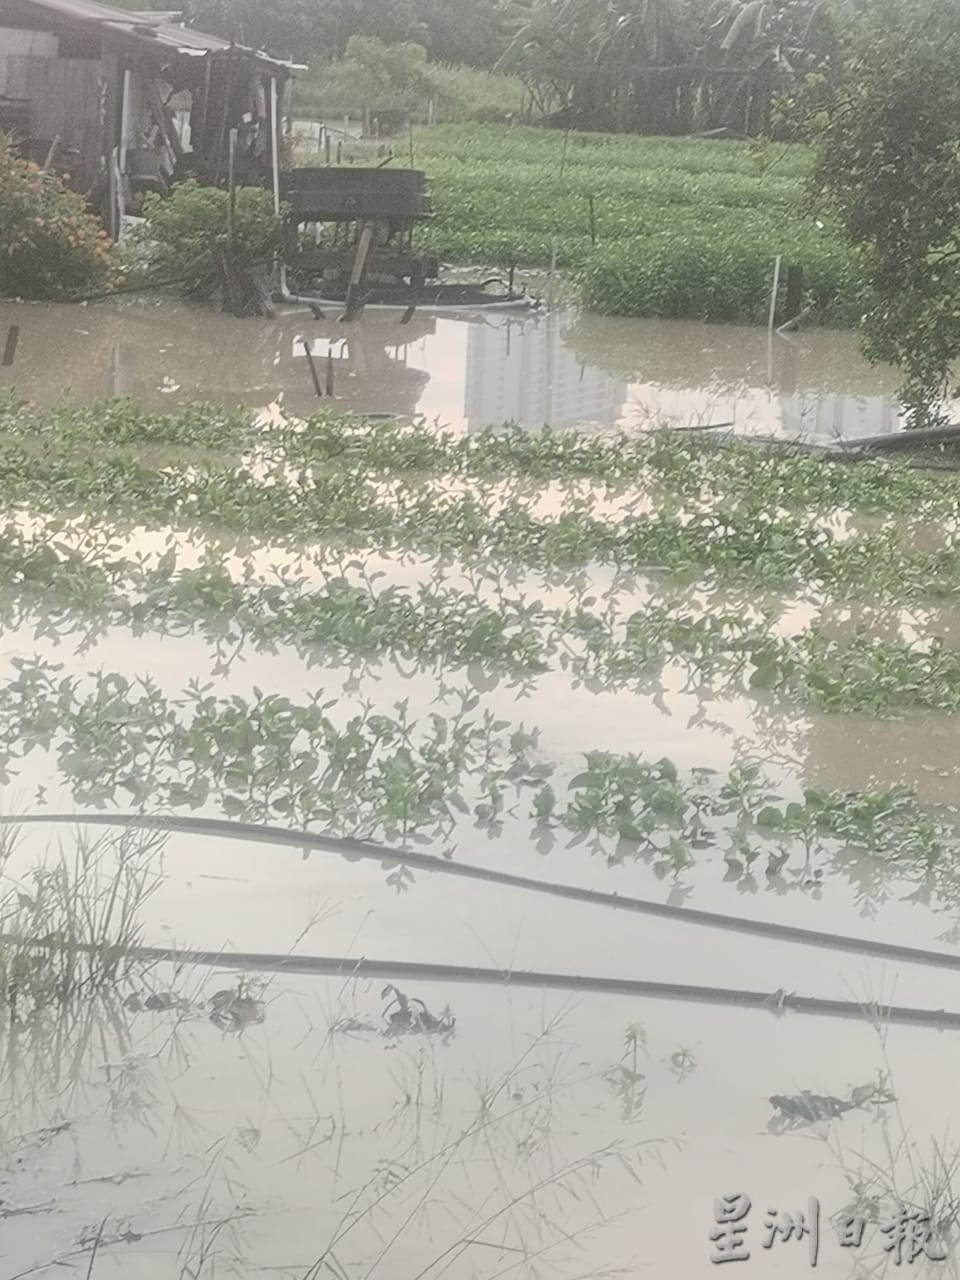 （大北马）双溪六甲菜园区再面对淹水窘境。